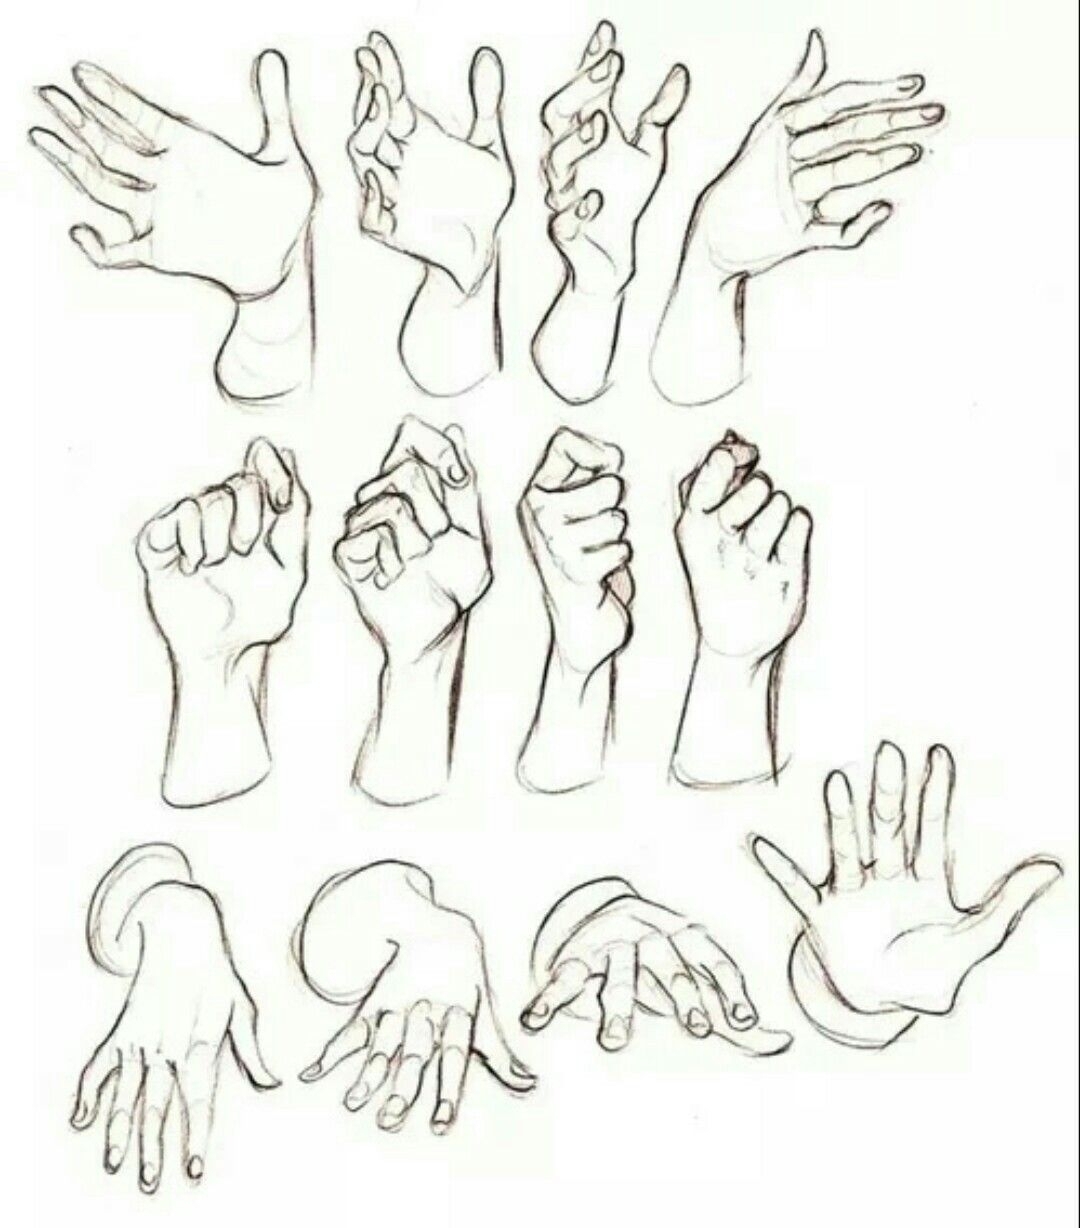 Как рисовать кисти рук: Конструкция